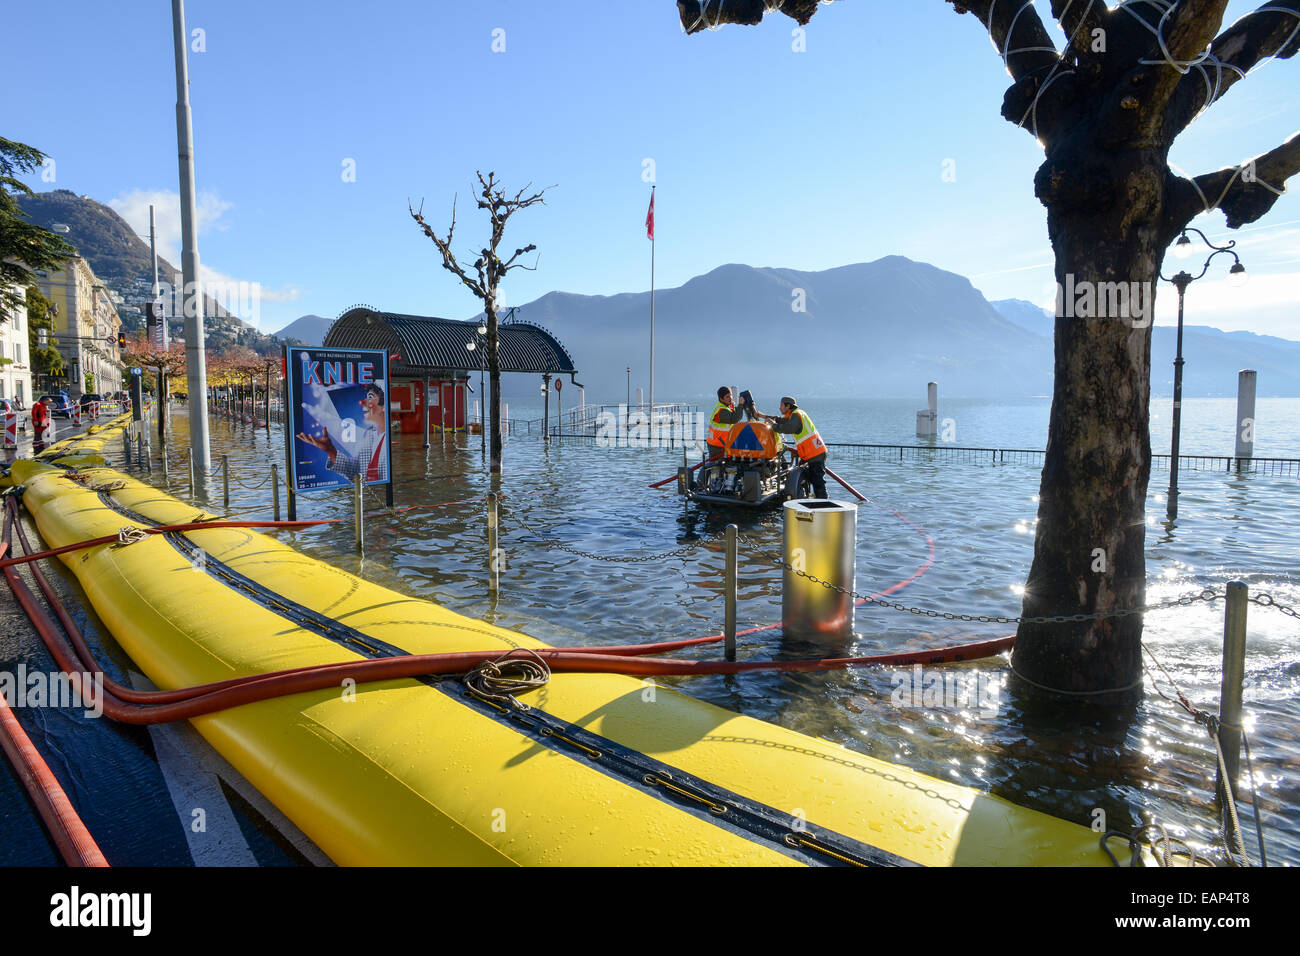 Lugano, Suisse. 18 novembre, 2014. Le lac de Lugano les inondations. Les gens de la Protection civile le pompage de l'eau de l'inondation du lac de Lugano, le Crédit Suisse : Stefan embre/Alamy Live News Banque D'Images